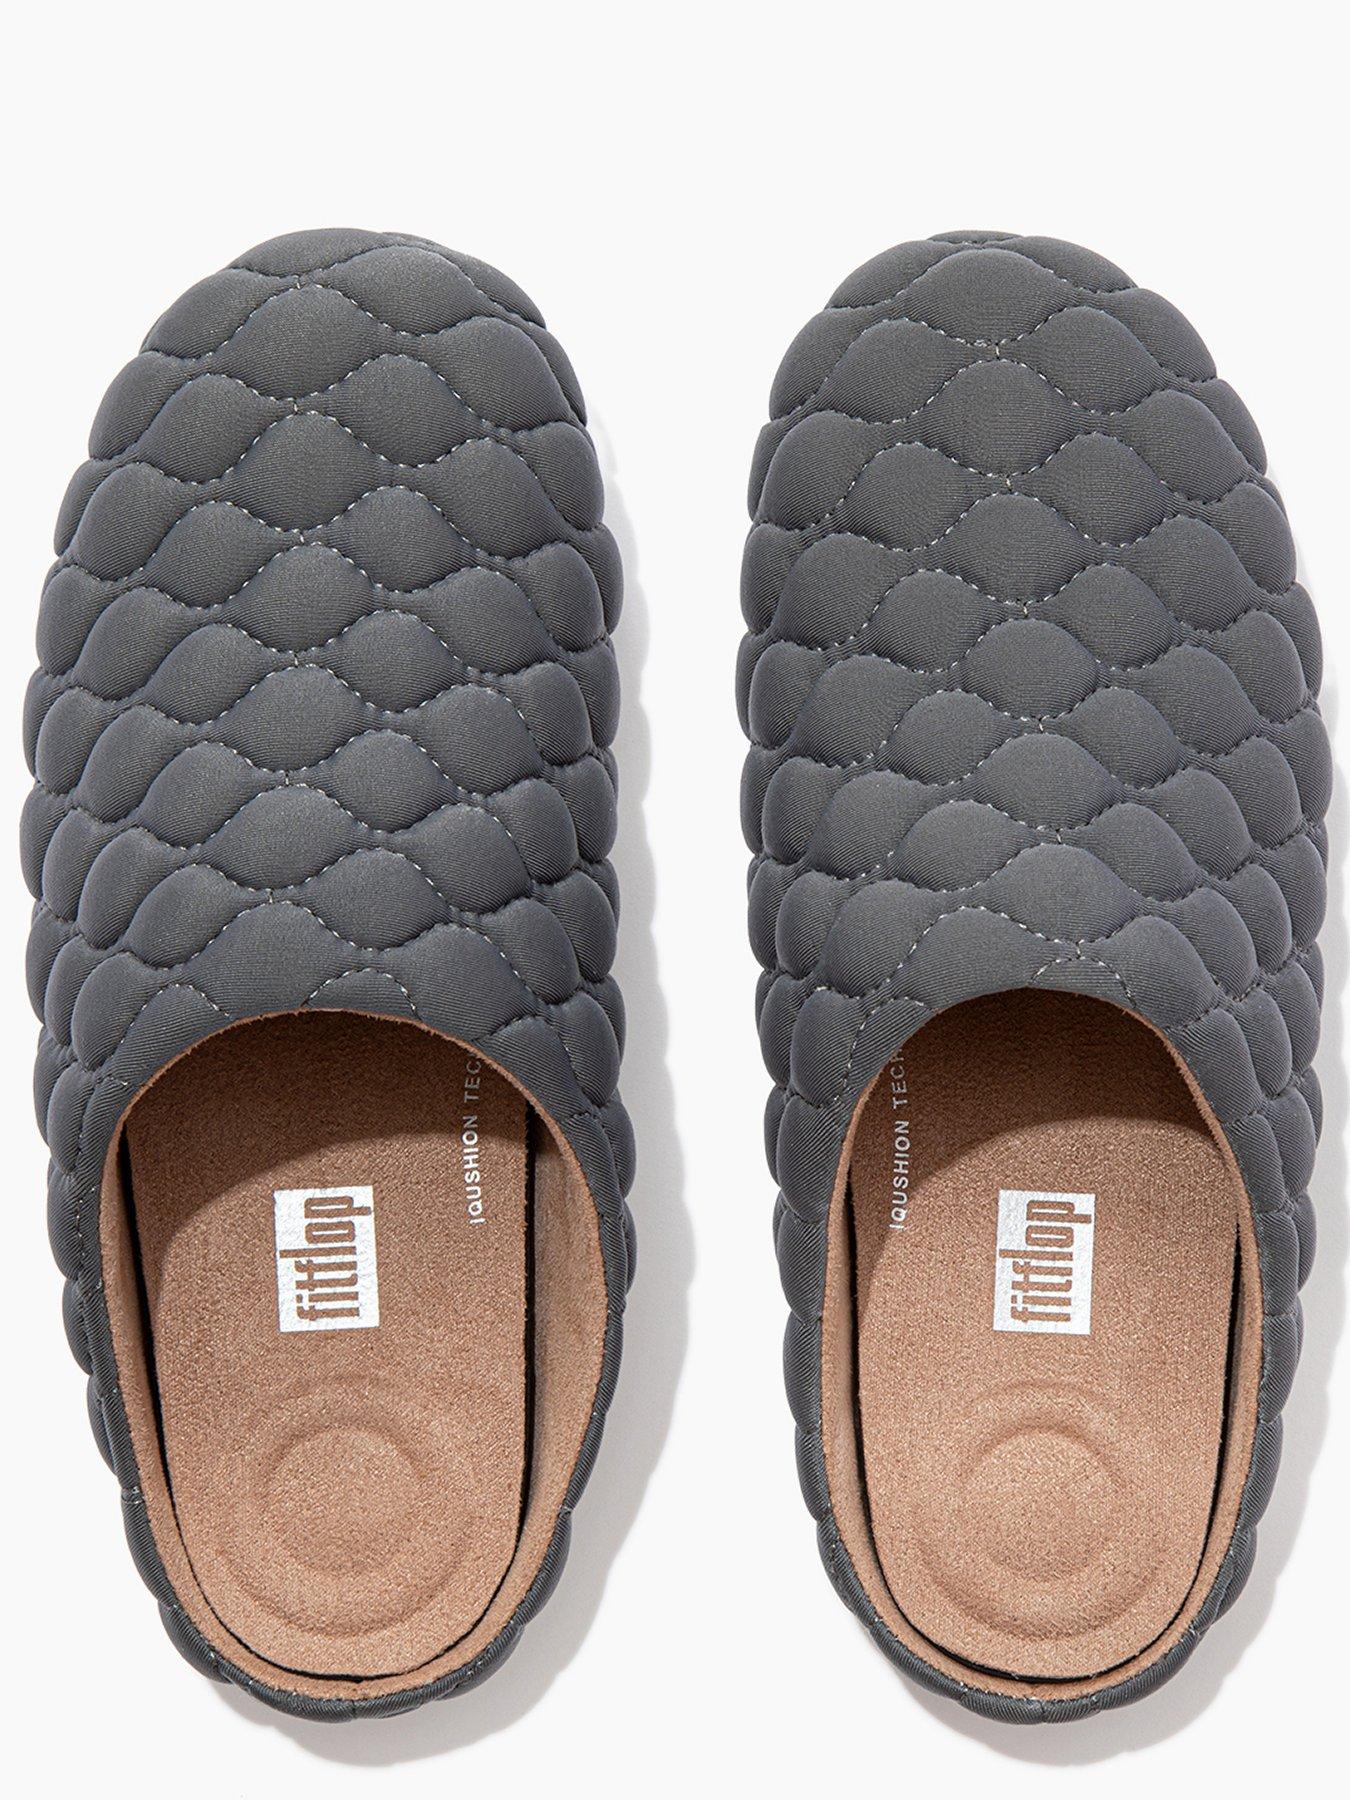 Nightwear & Loungewear Chrissie Padded Slippers - Grey